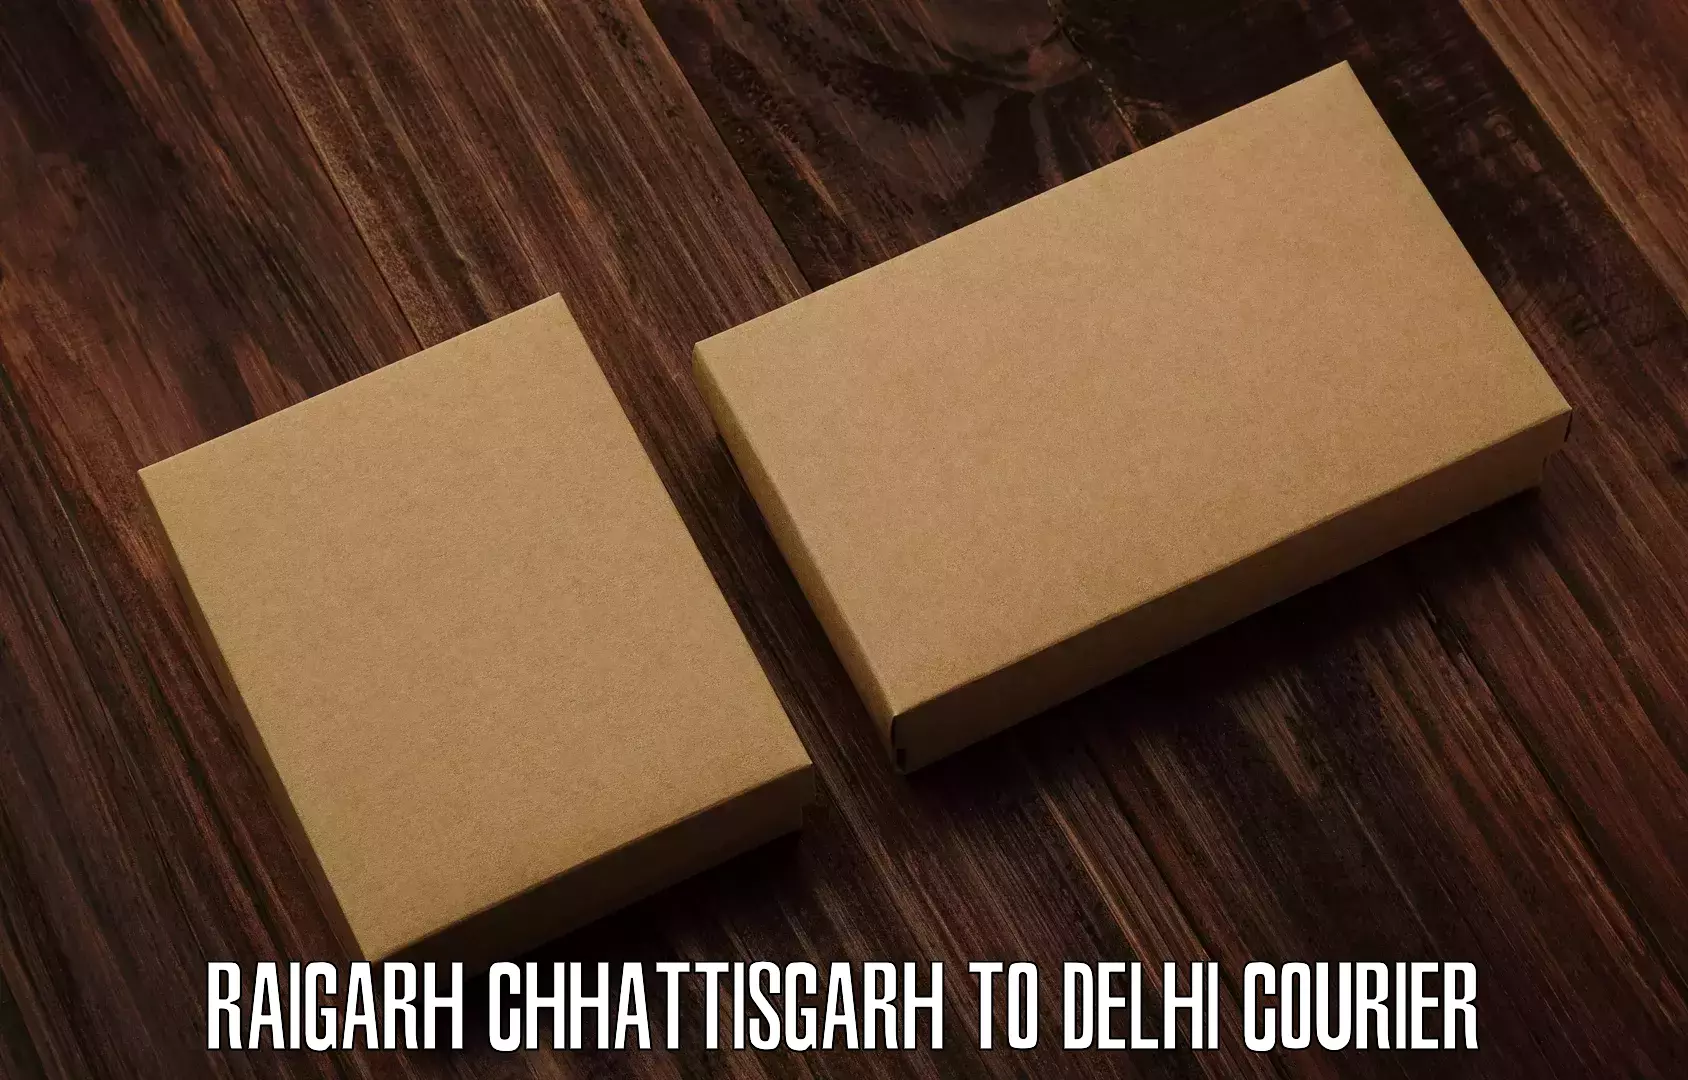 Advanced delivery network Raigarh Chhattisgarh to University of Delhi